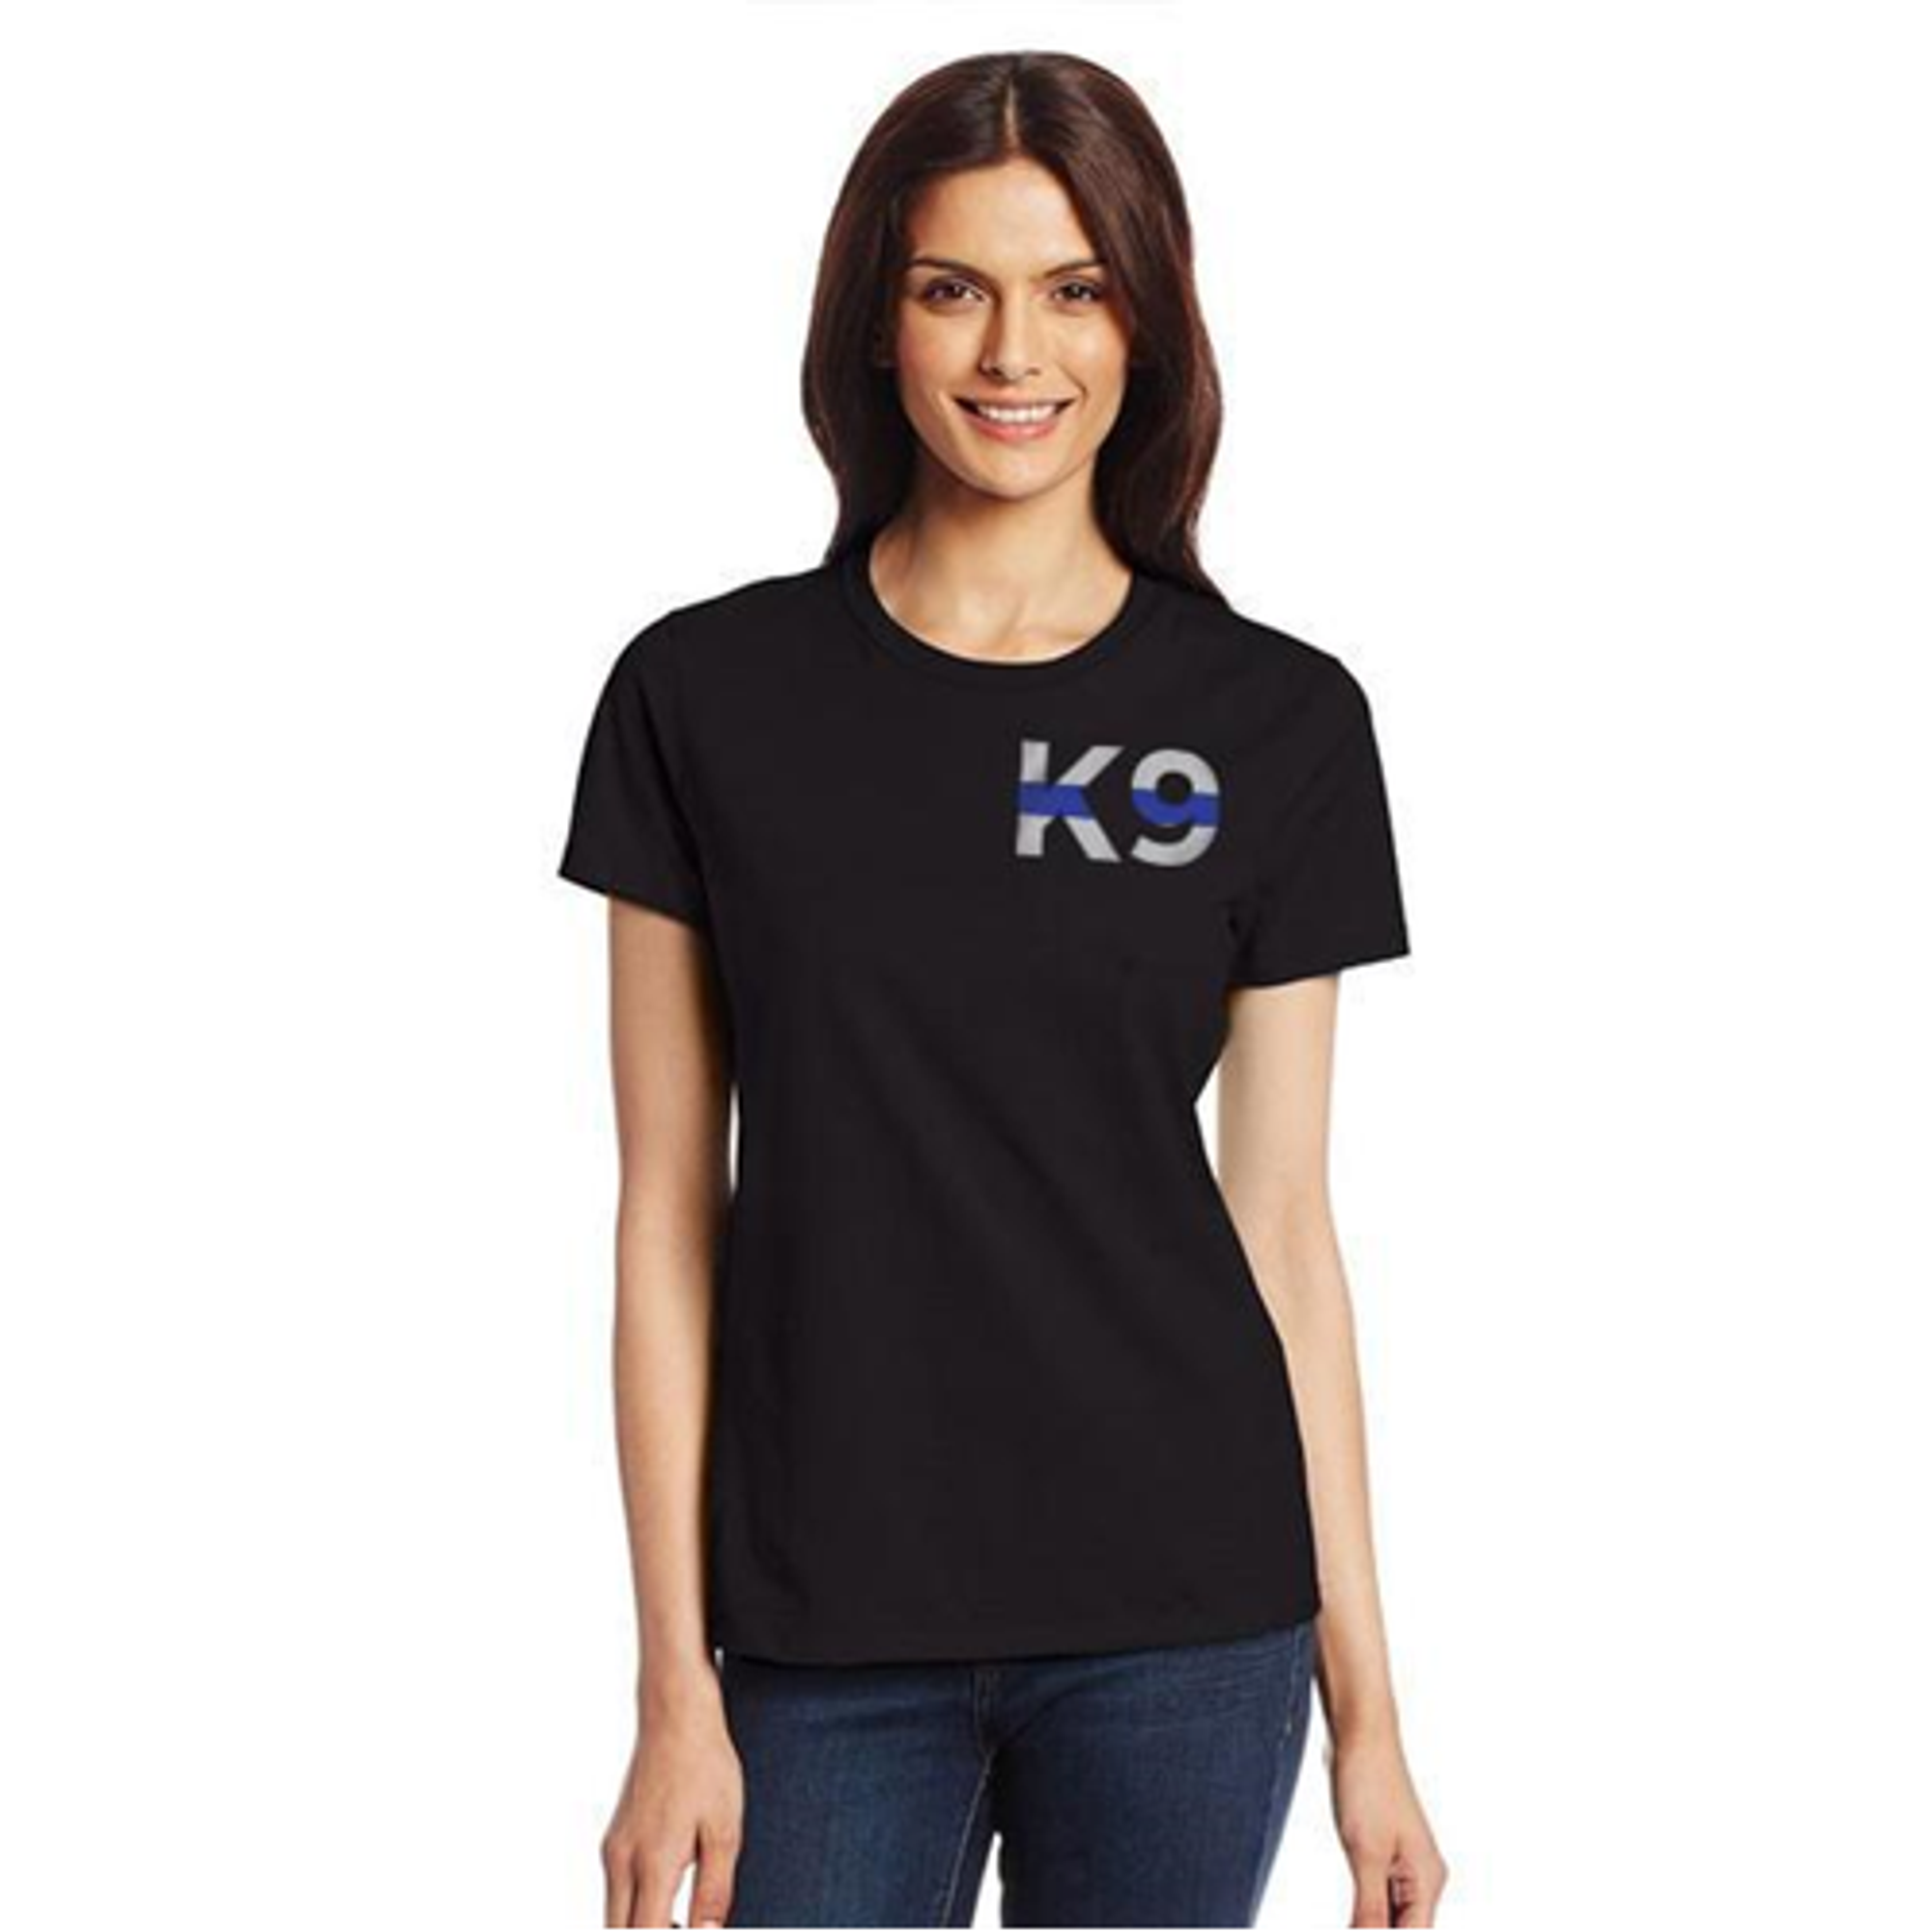 Women's T-shirt - K9 Thin Blue Line